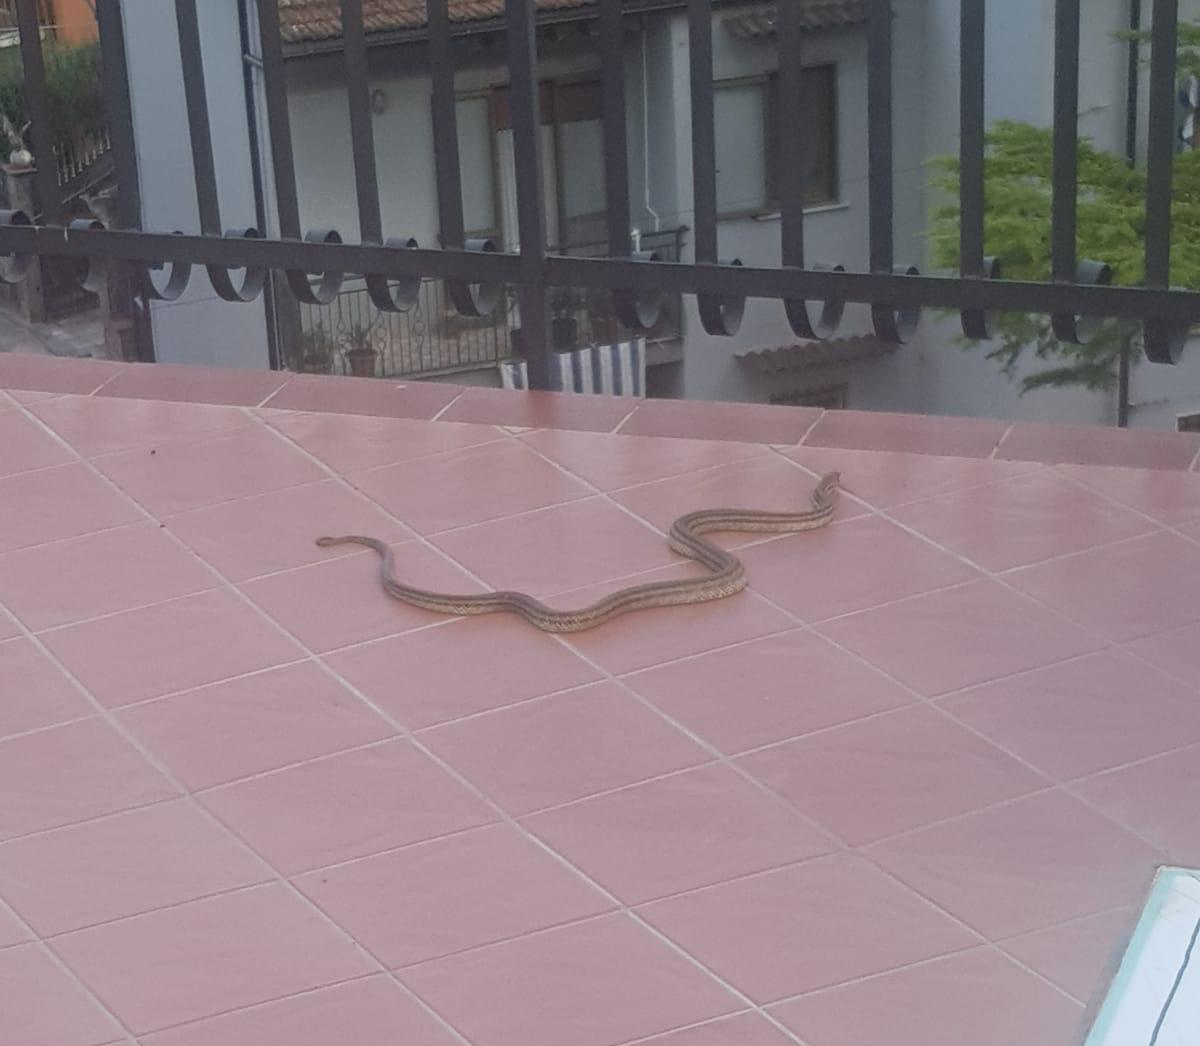 Sul terrazzo compare un serpente, paura a Polla